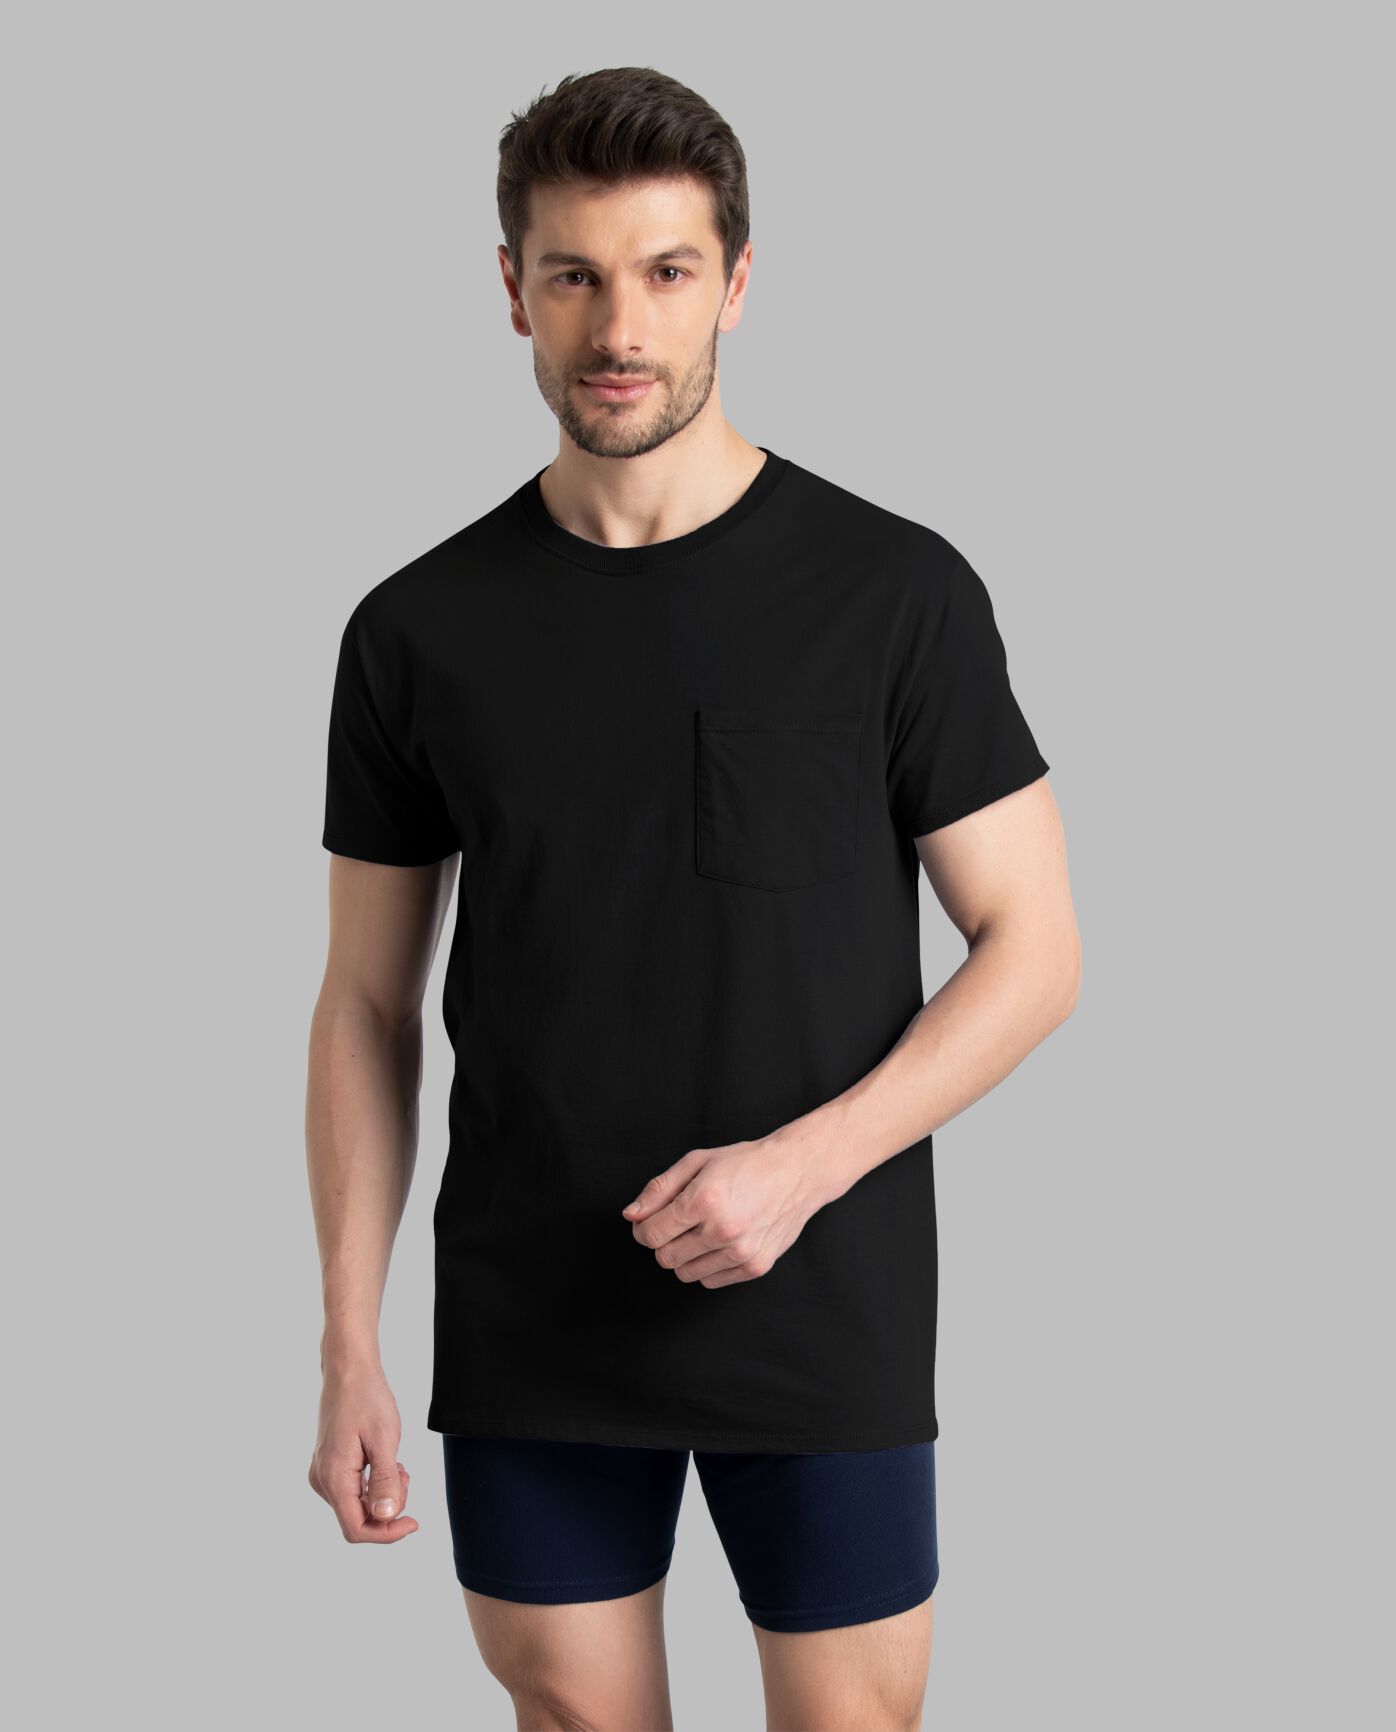 Black Fashion T-shirt